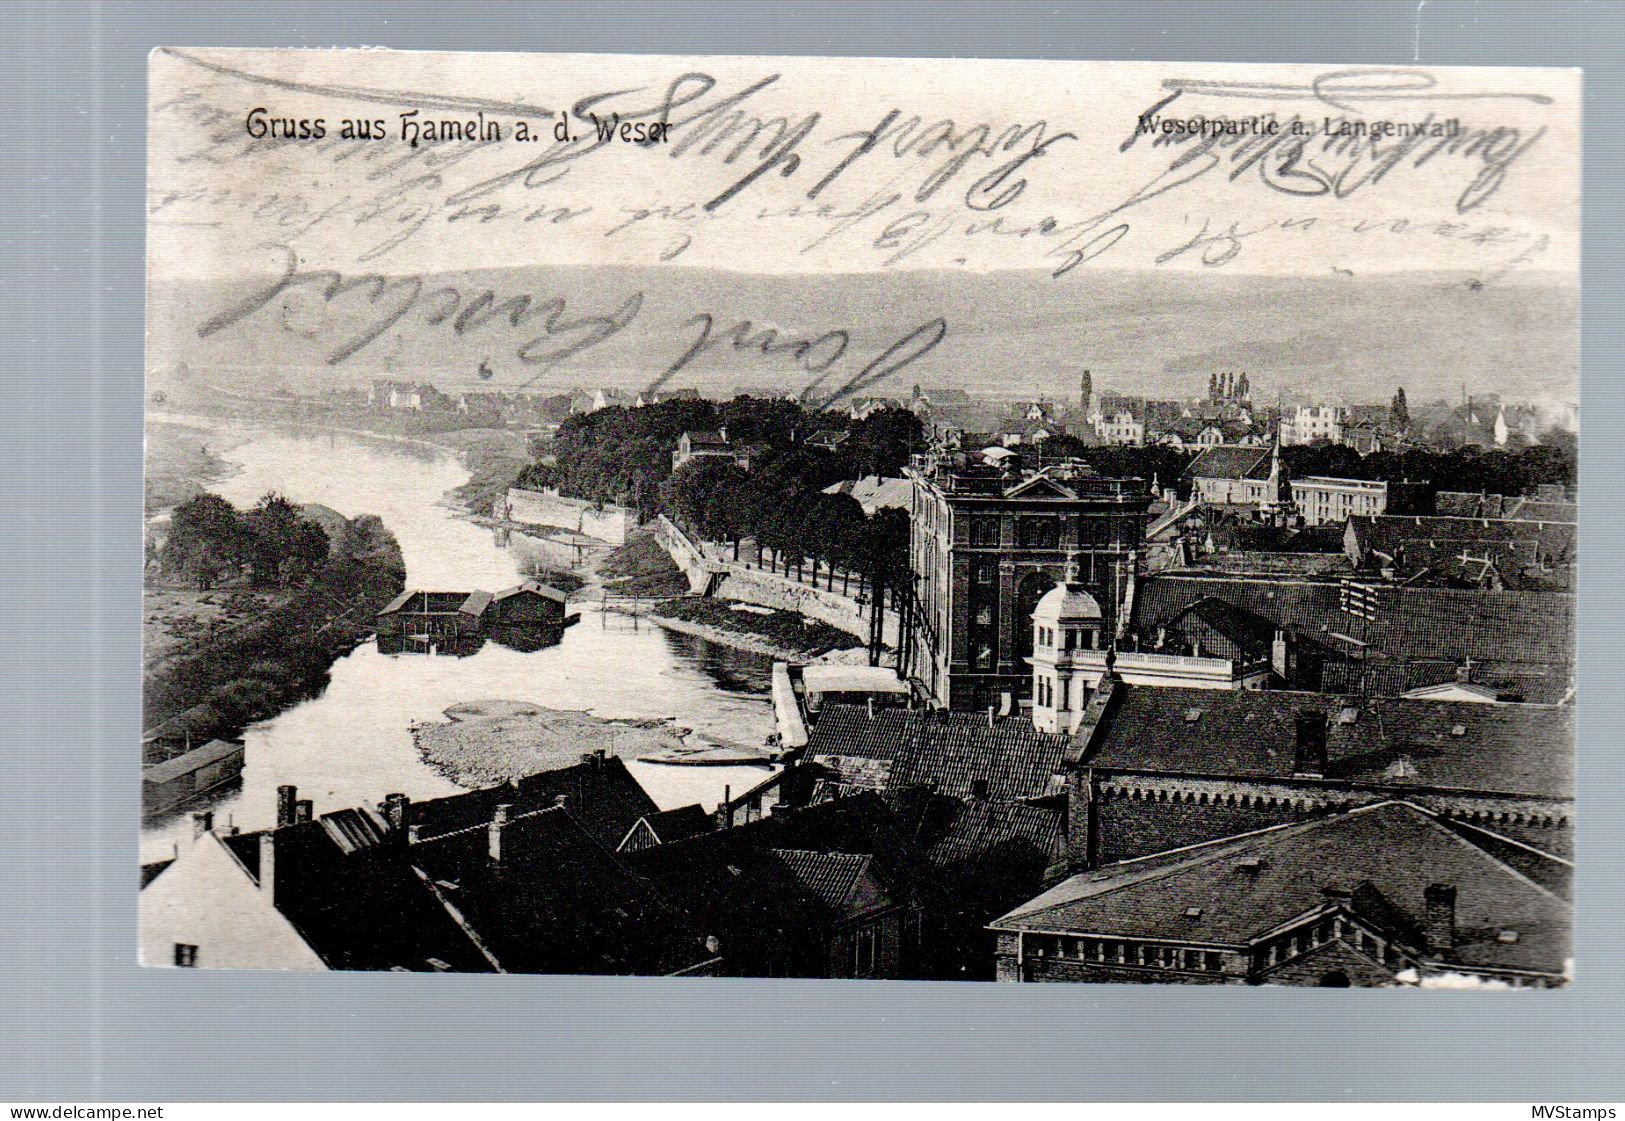 DR 1909 Postkarte Germania Luxus Gebraucht Bahnpost "Halle (s)-Lohne" - Brieven En Documenten